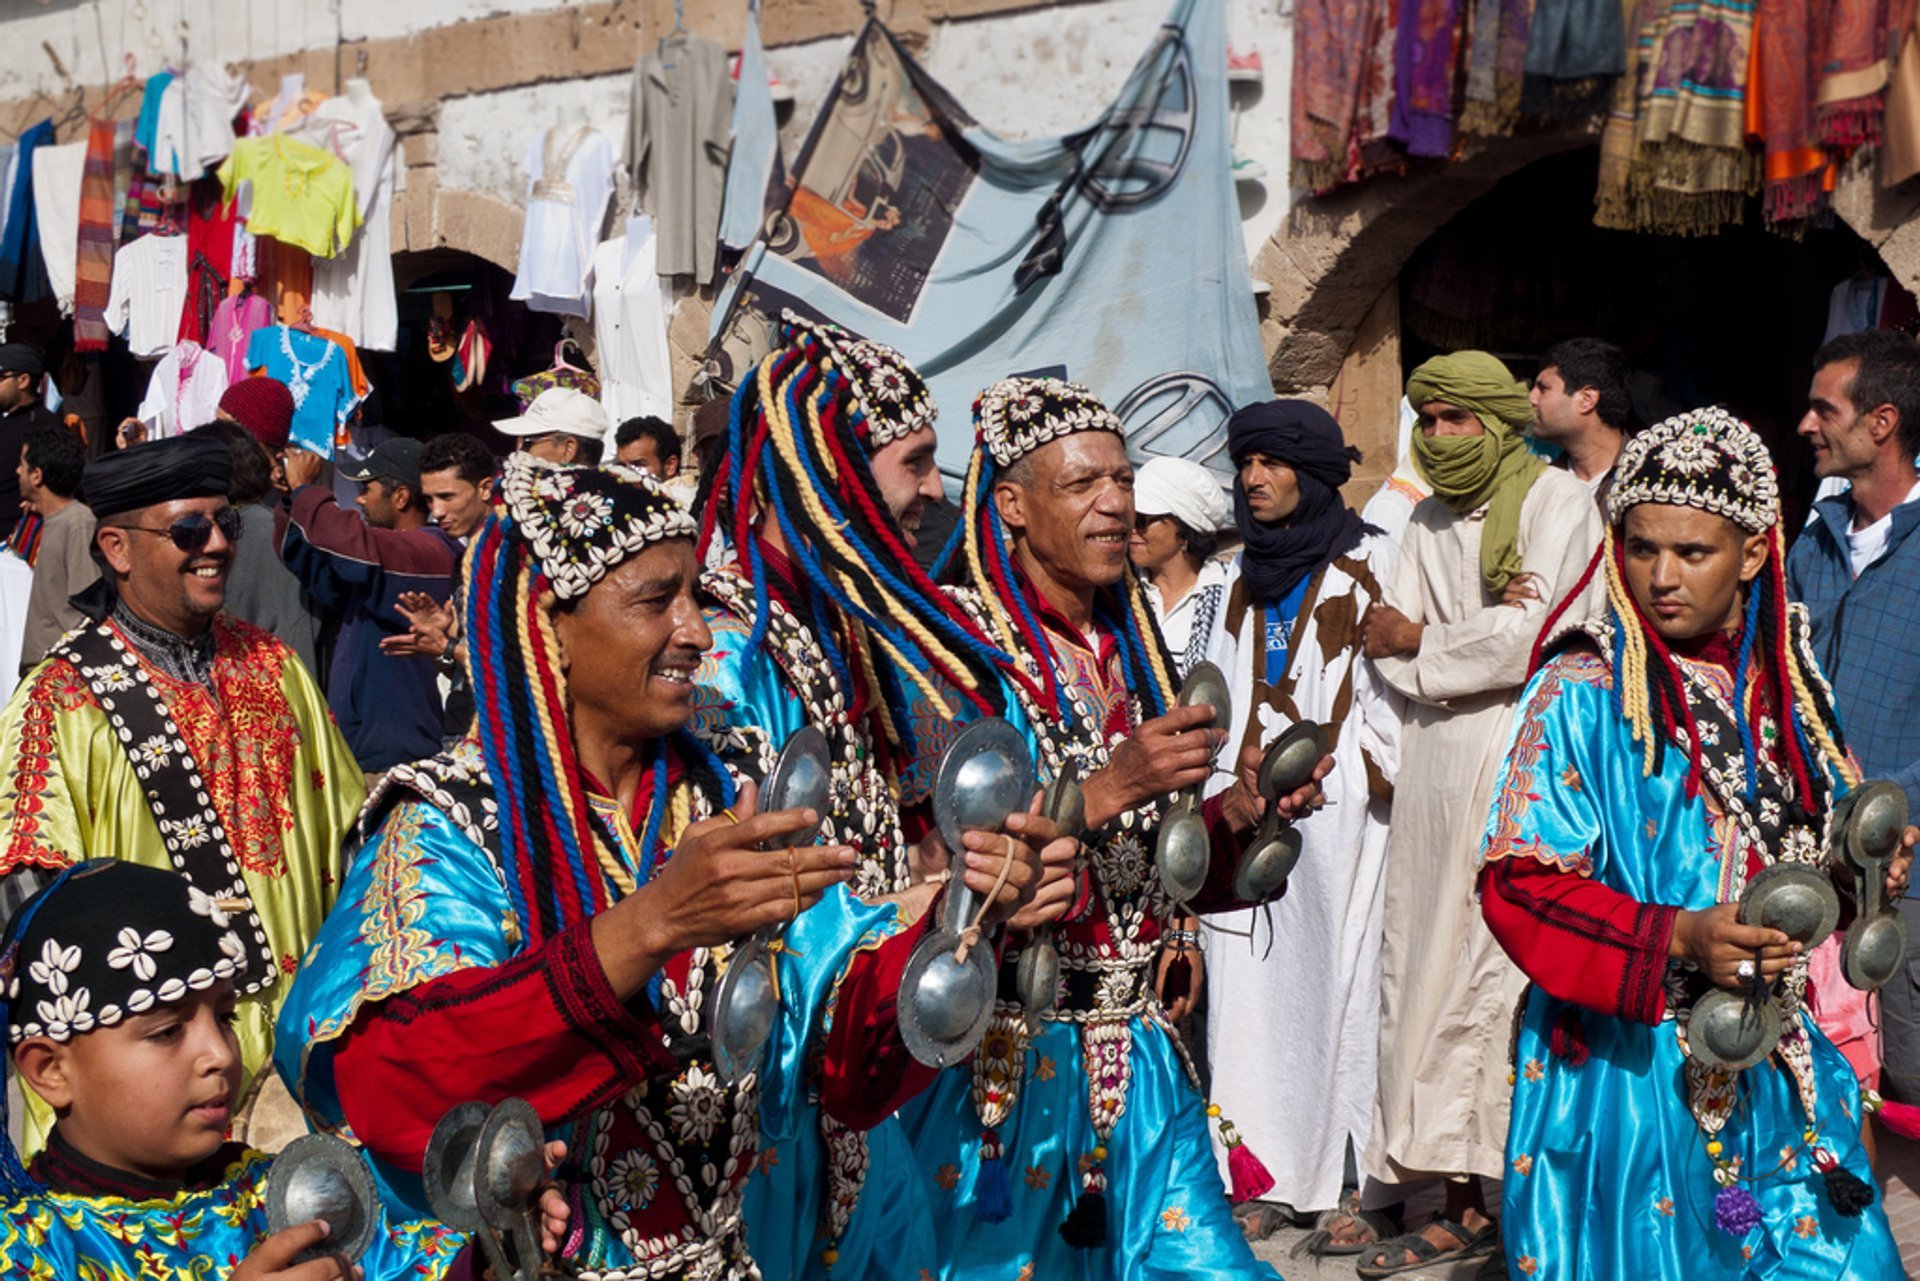 Gnaoua Festival Tour L’étape de Marrakech se clôture en apothéose